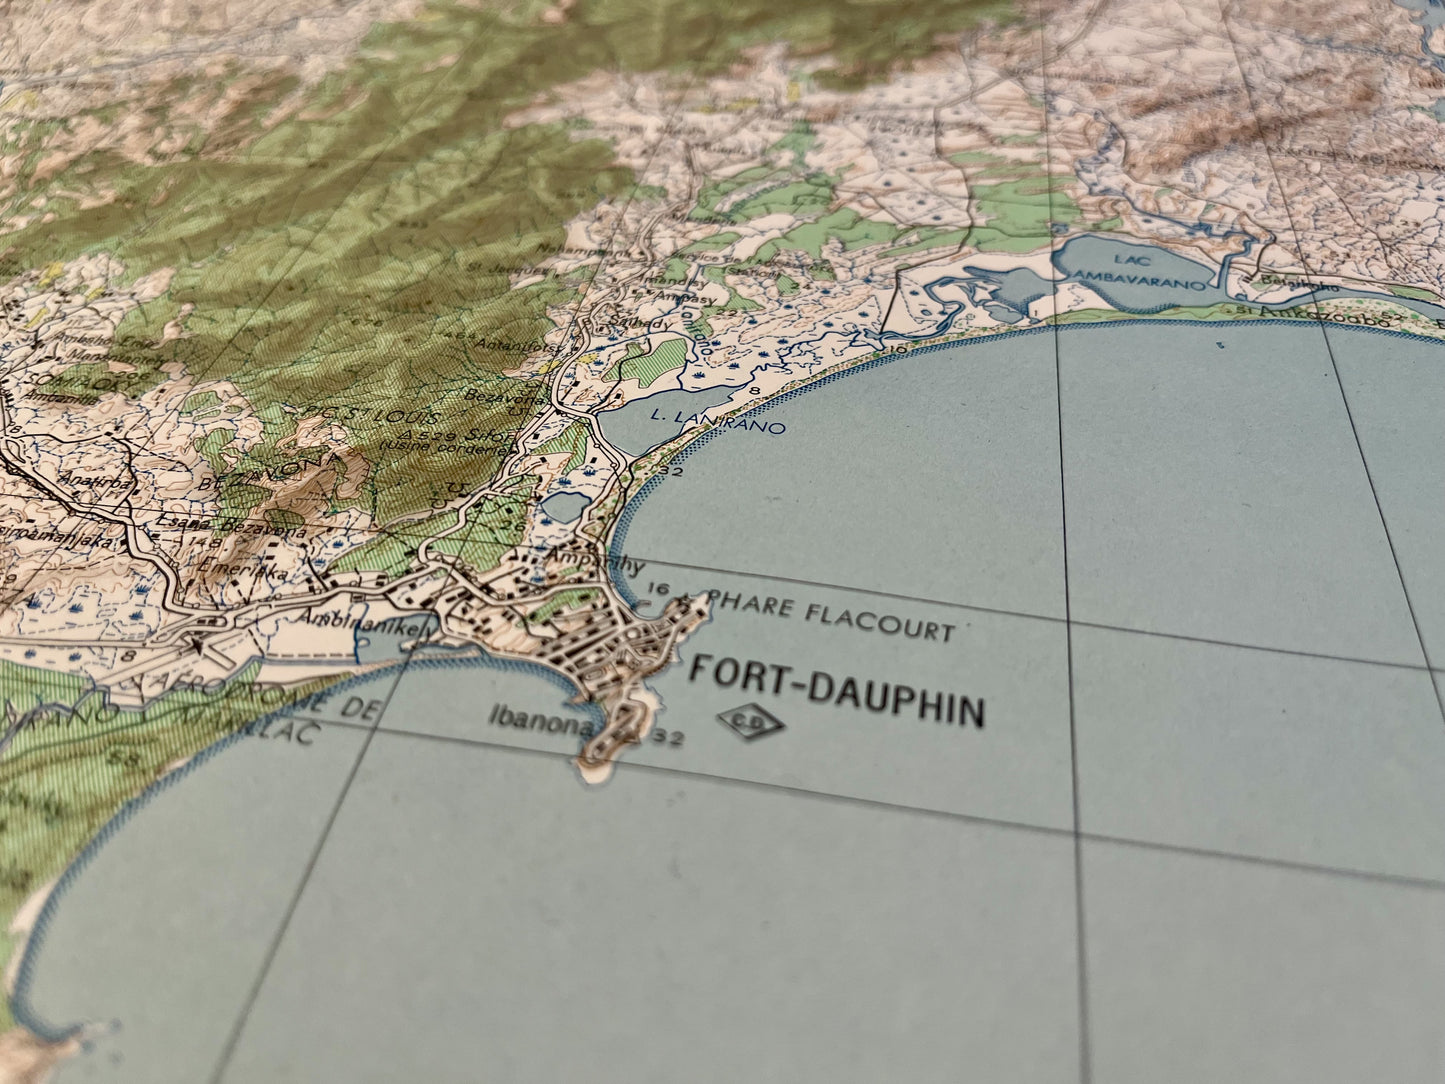 Décoration carte géographique de Fort-Dauphin à Madagascar